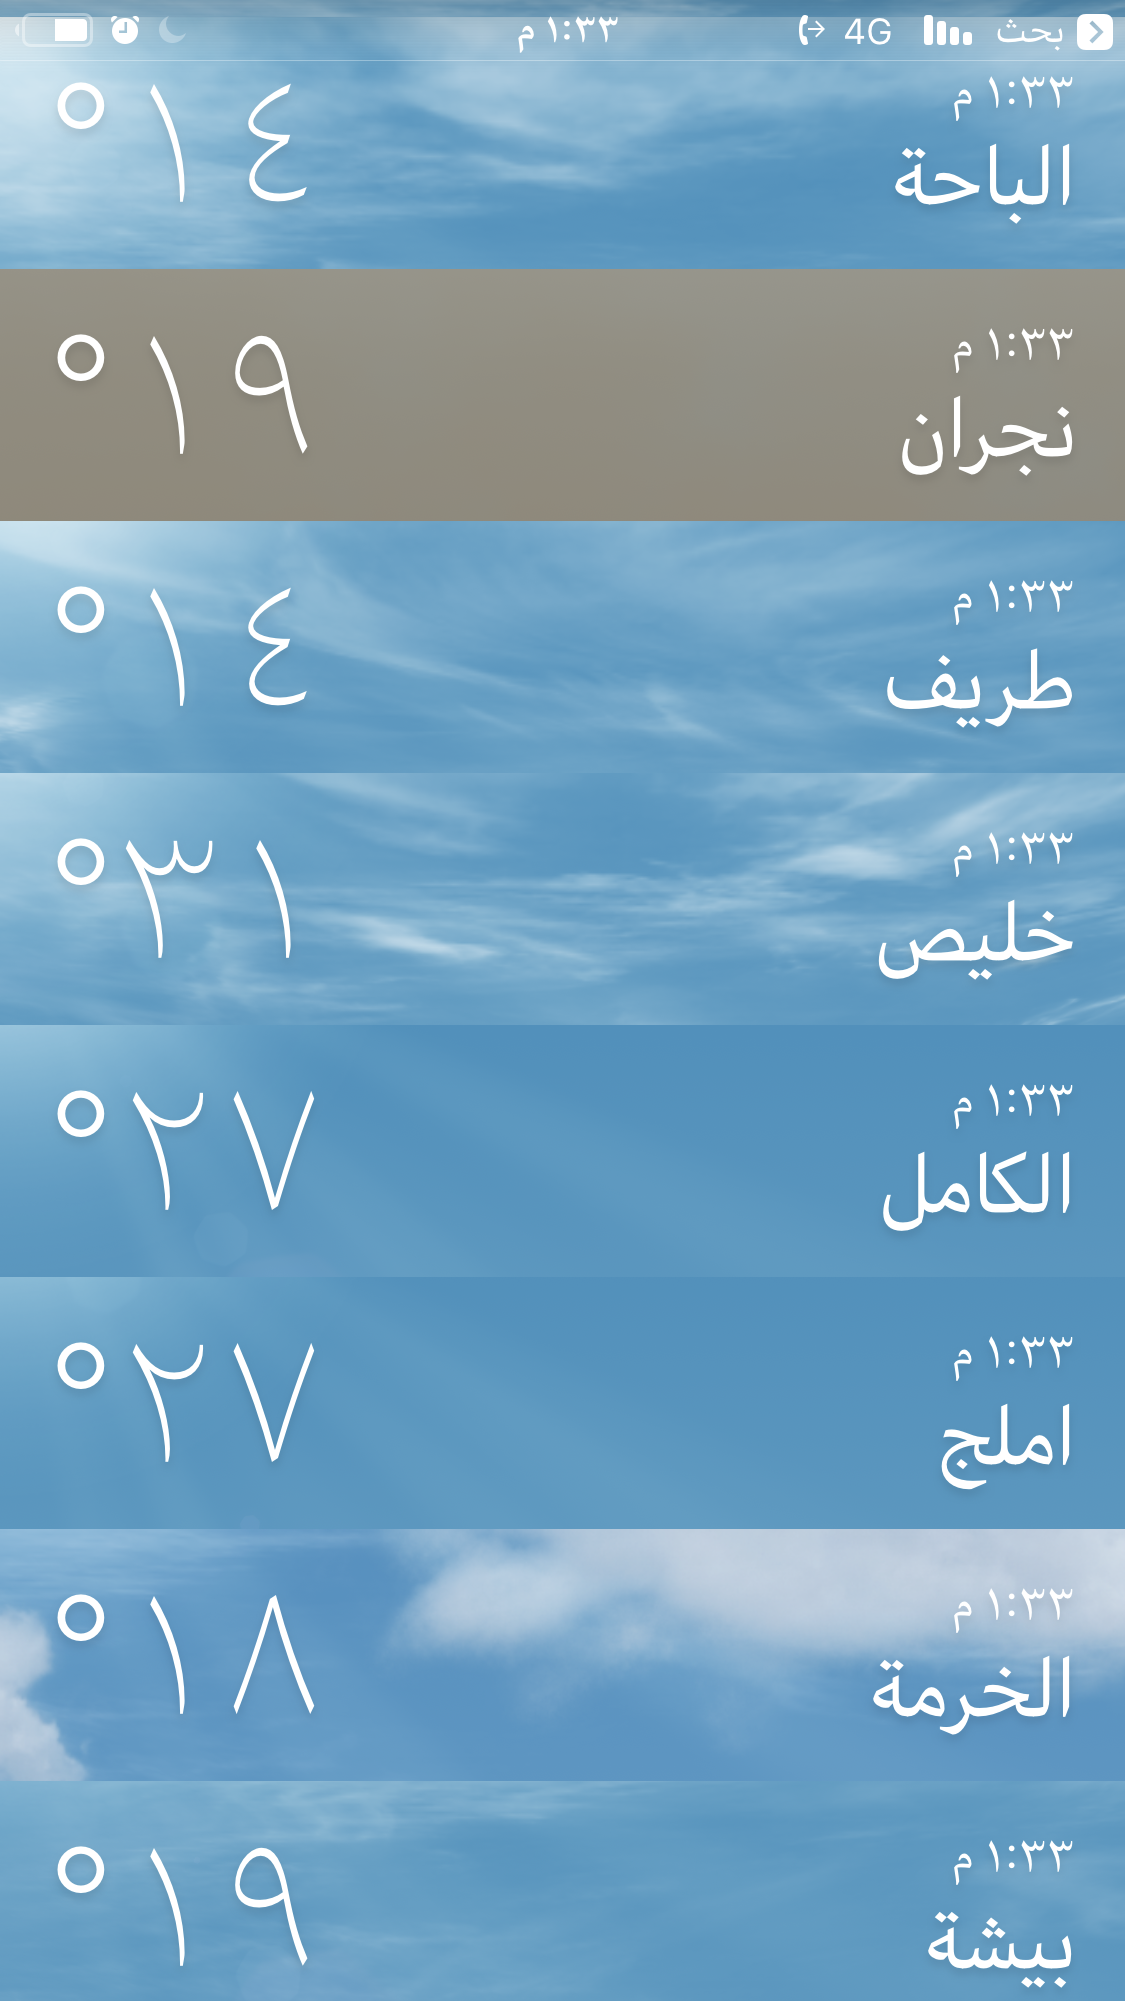 درجة الحرارة فى الباحة اليوم